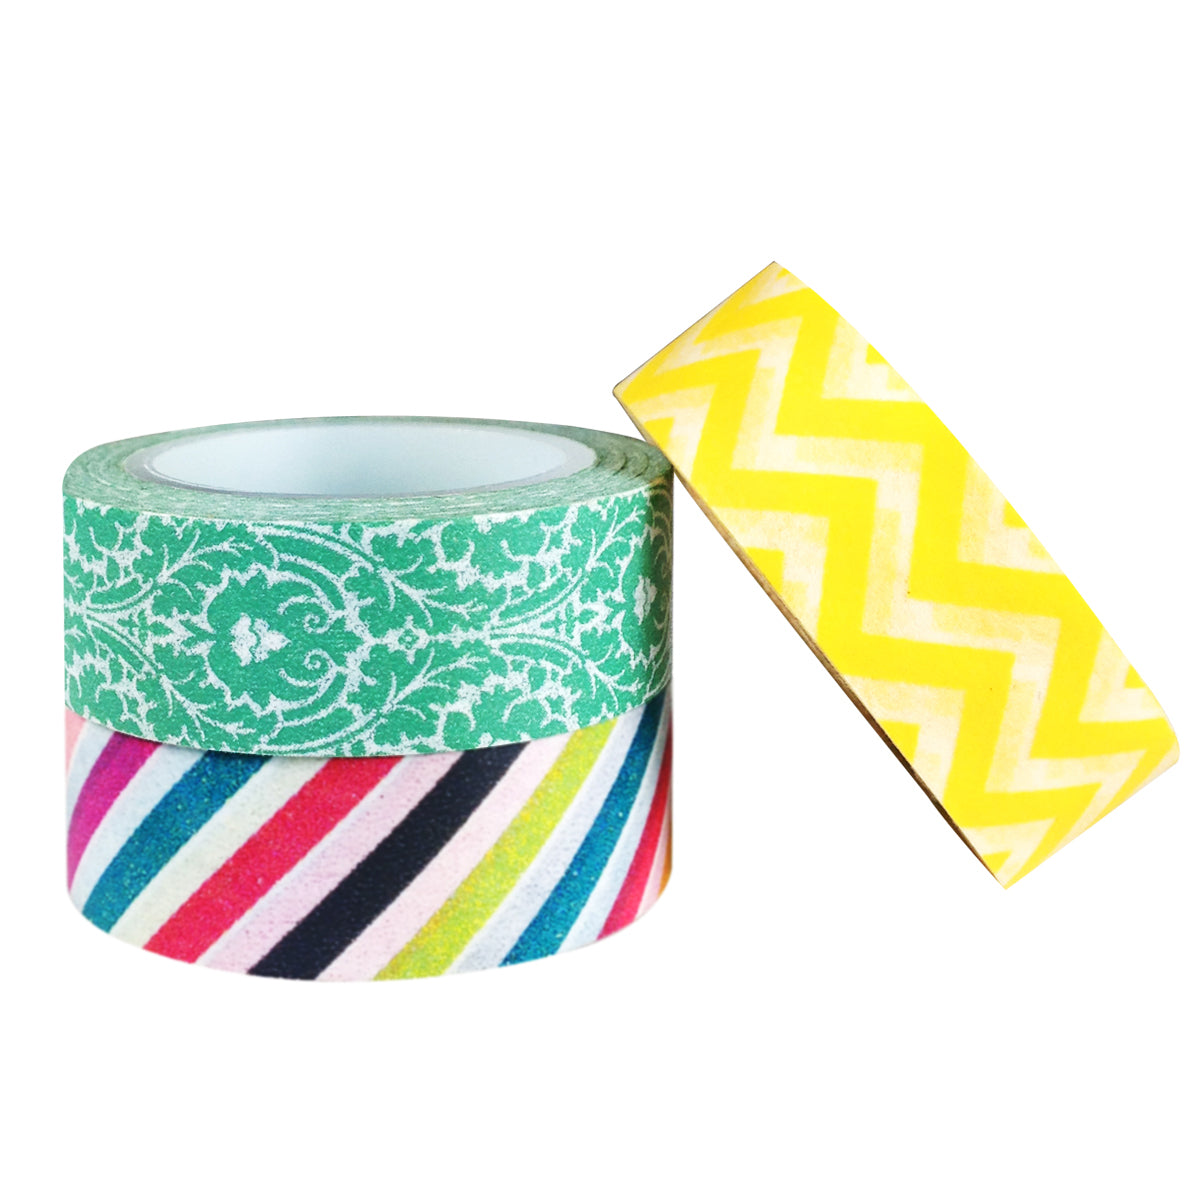 Wrapables Stripes, Waves, & D?cor Japanese Washi Masking Tape (Set of 3)